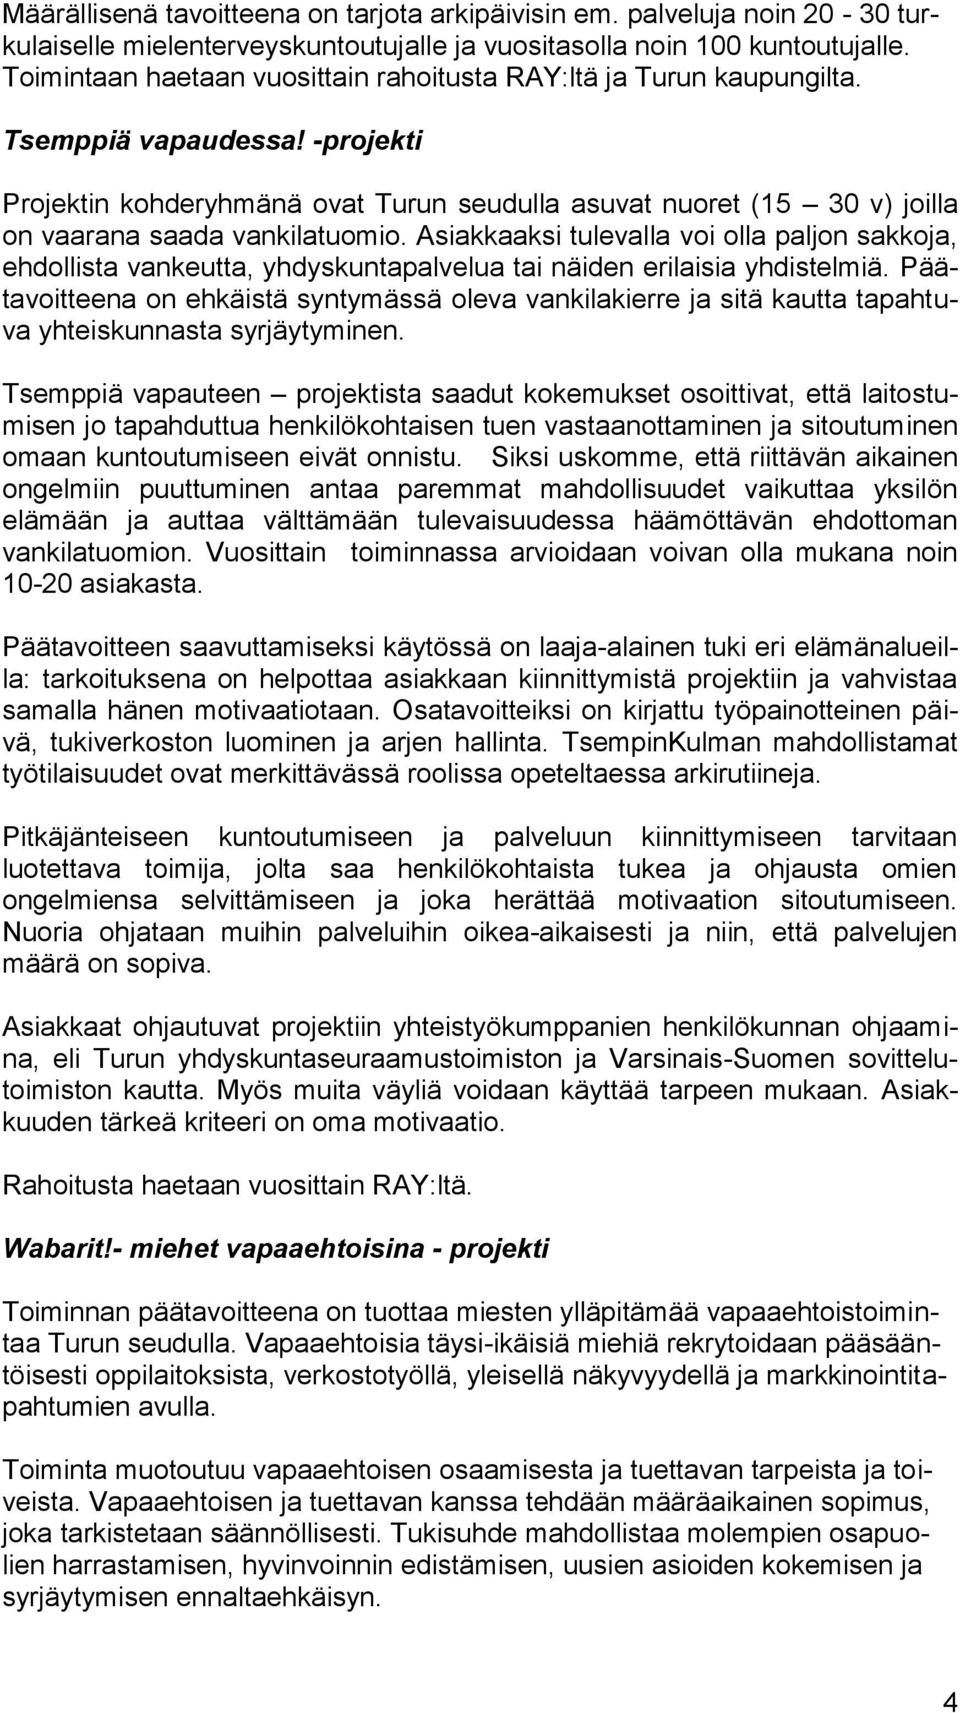 -projekti Projektin kohderyhmänä ovat Turun seudulla asuvat nuoret (15 30 v) joilla on vaarana saada vankilatuomio.